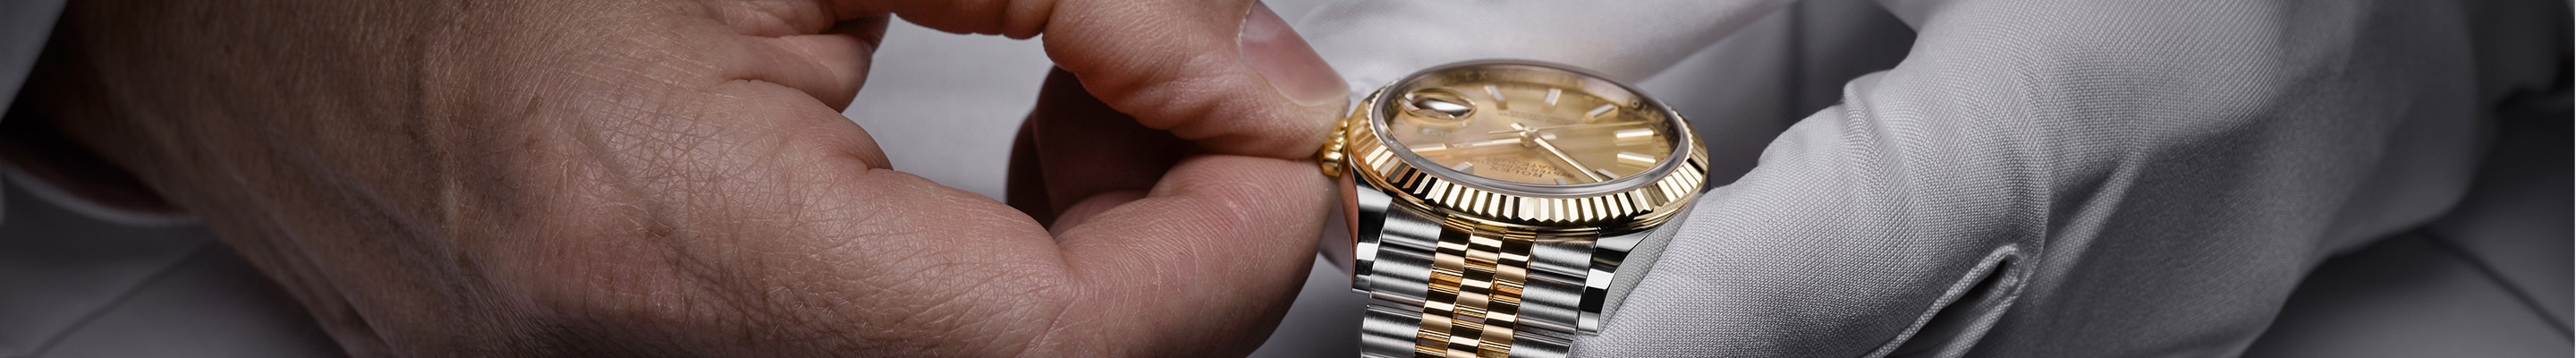 Rolex Watch Servicing and Repair at Lenkersdorfer Jewelers